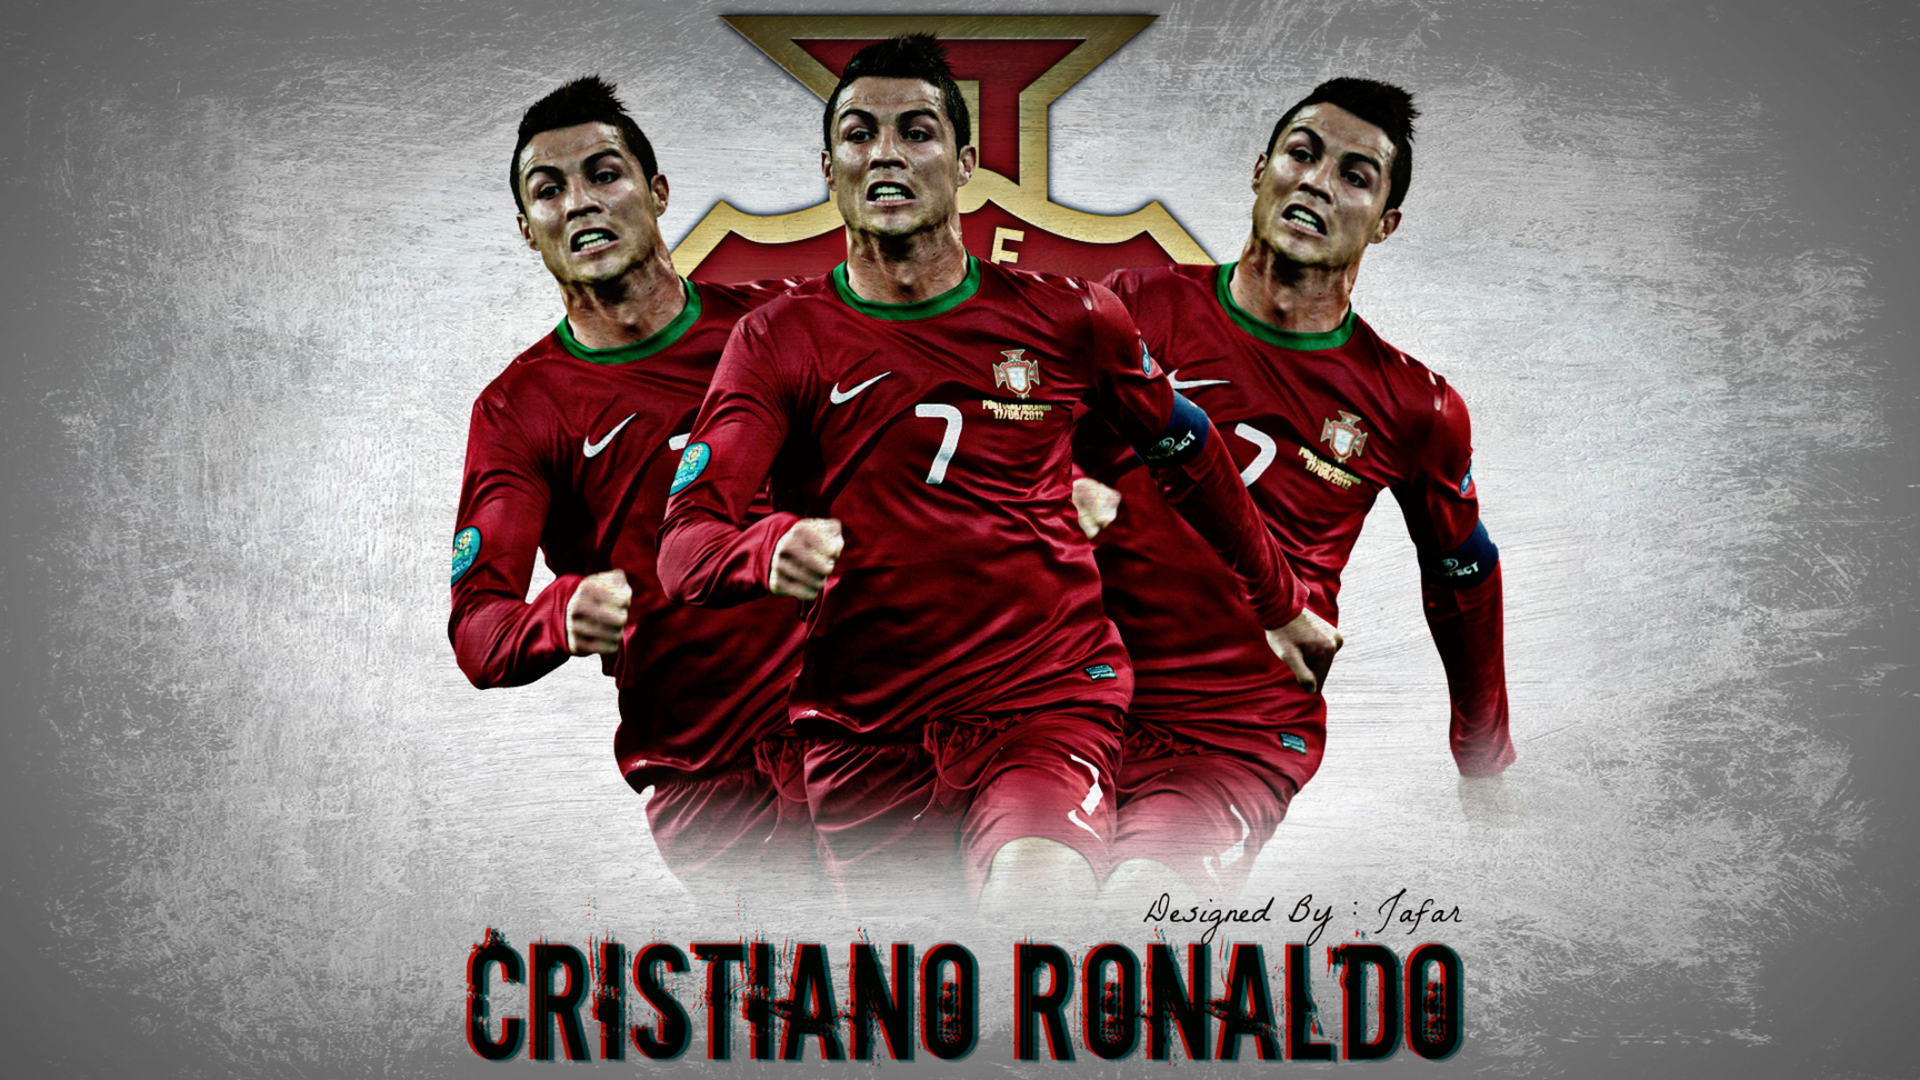 HD wallpaper: Cristiano Ronaldo - Portugal World Cup, celebrity,  celebrities | Wallpaper Flare